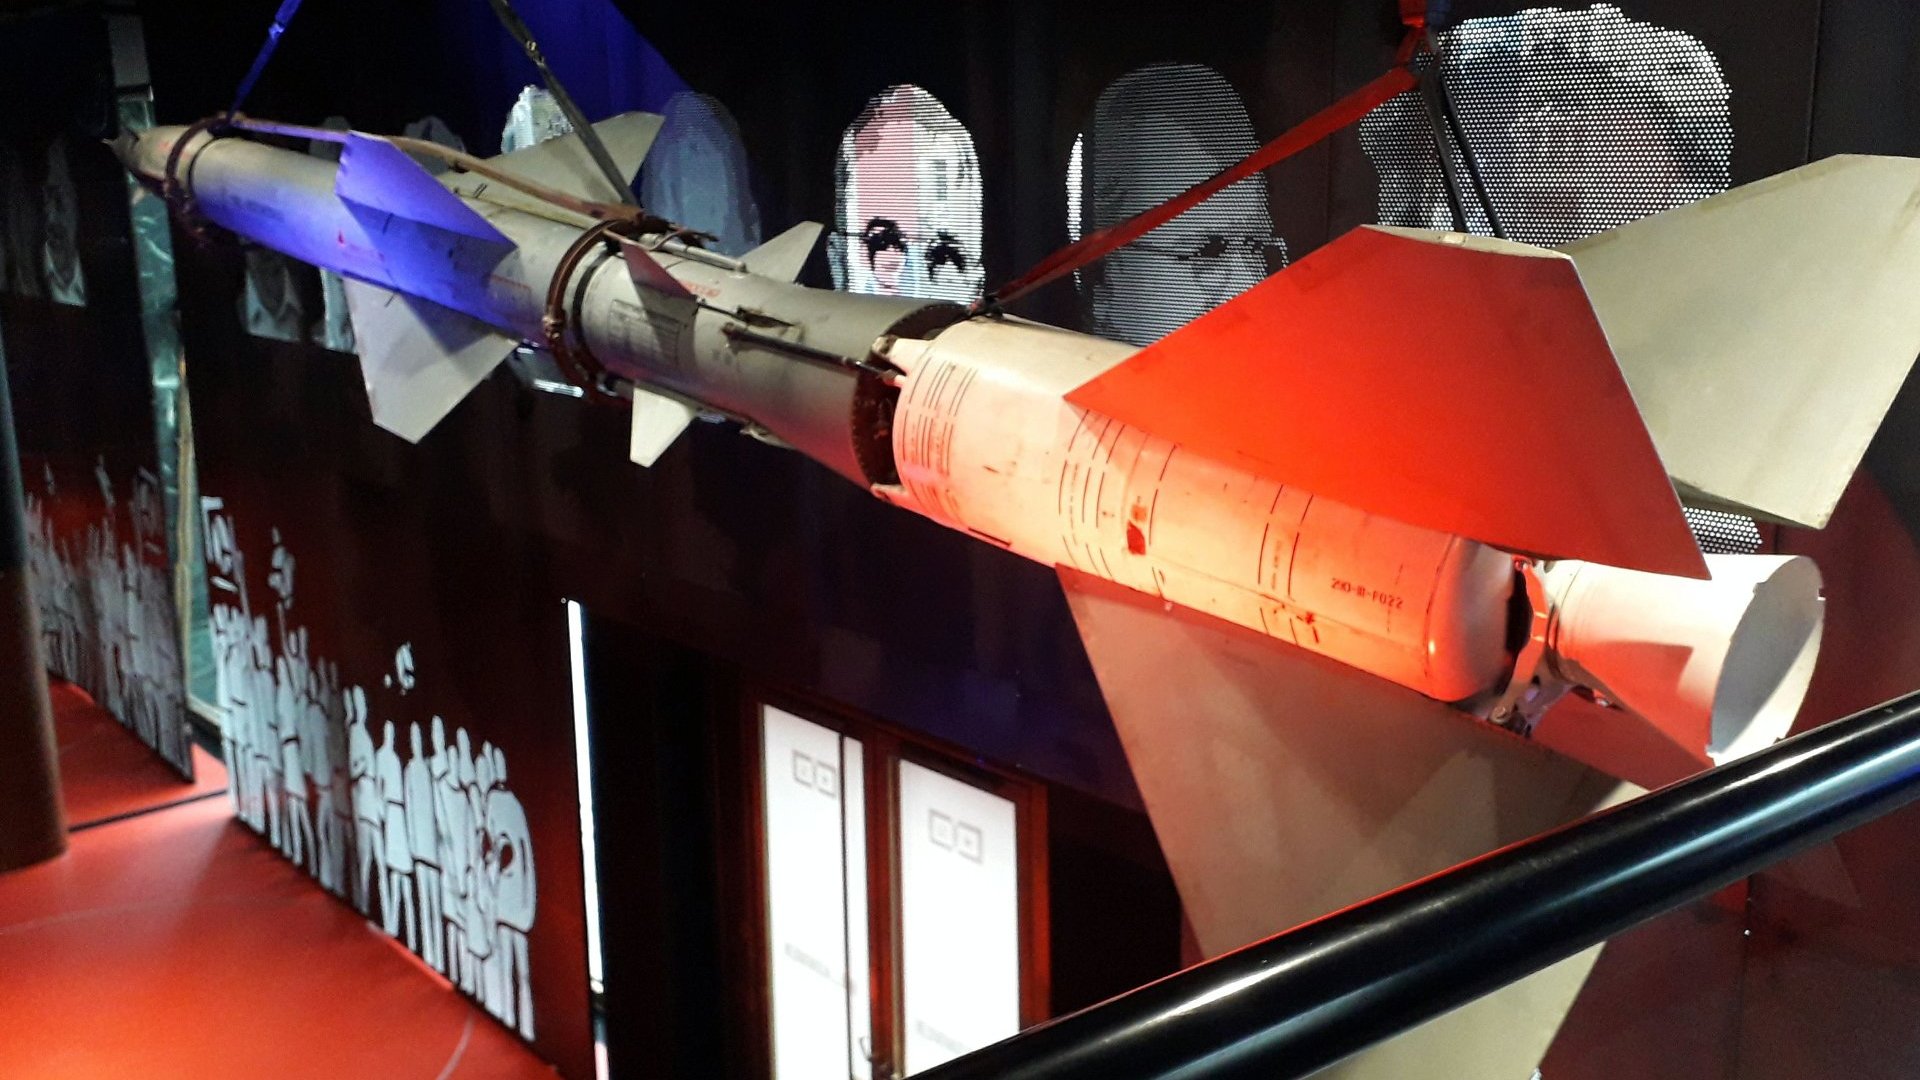 Jeden z eksponatów Muzeum Zimnej Wojny, rakieta przeciwlotnicza systemu "Dźwina"